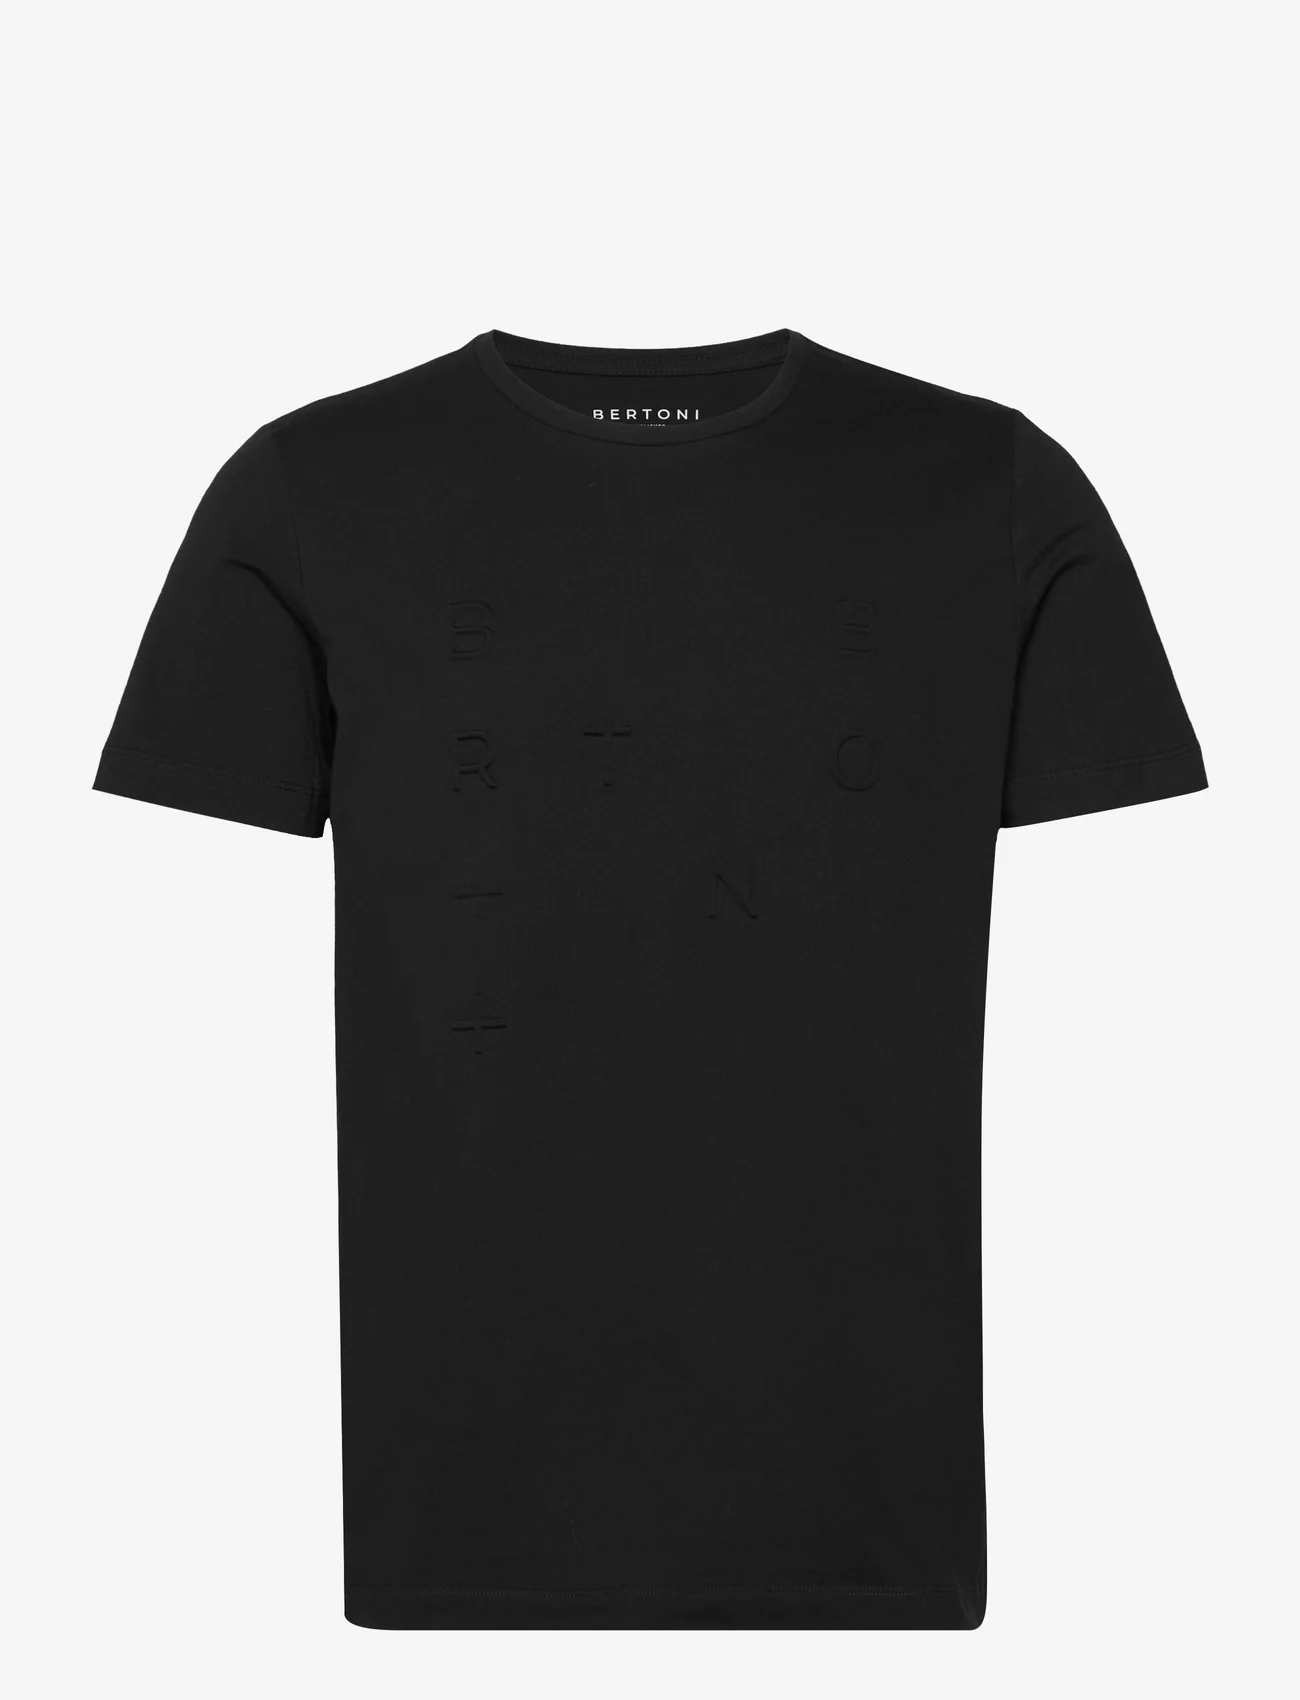 Bertoni Ingolf S/s T-shirt (Jet Black), (22.48 €) | Large selection of | Booztlet.com